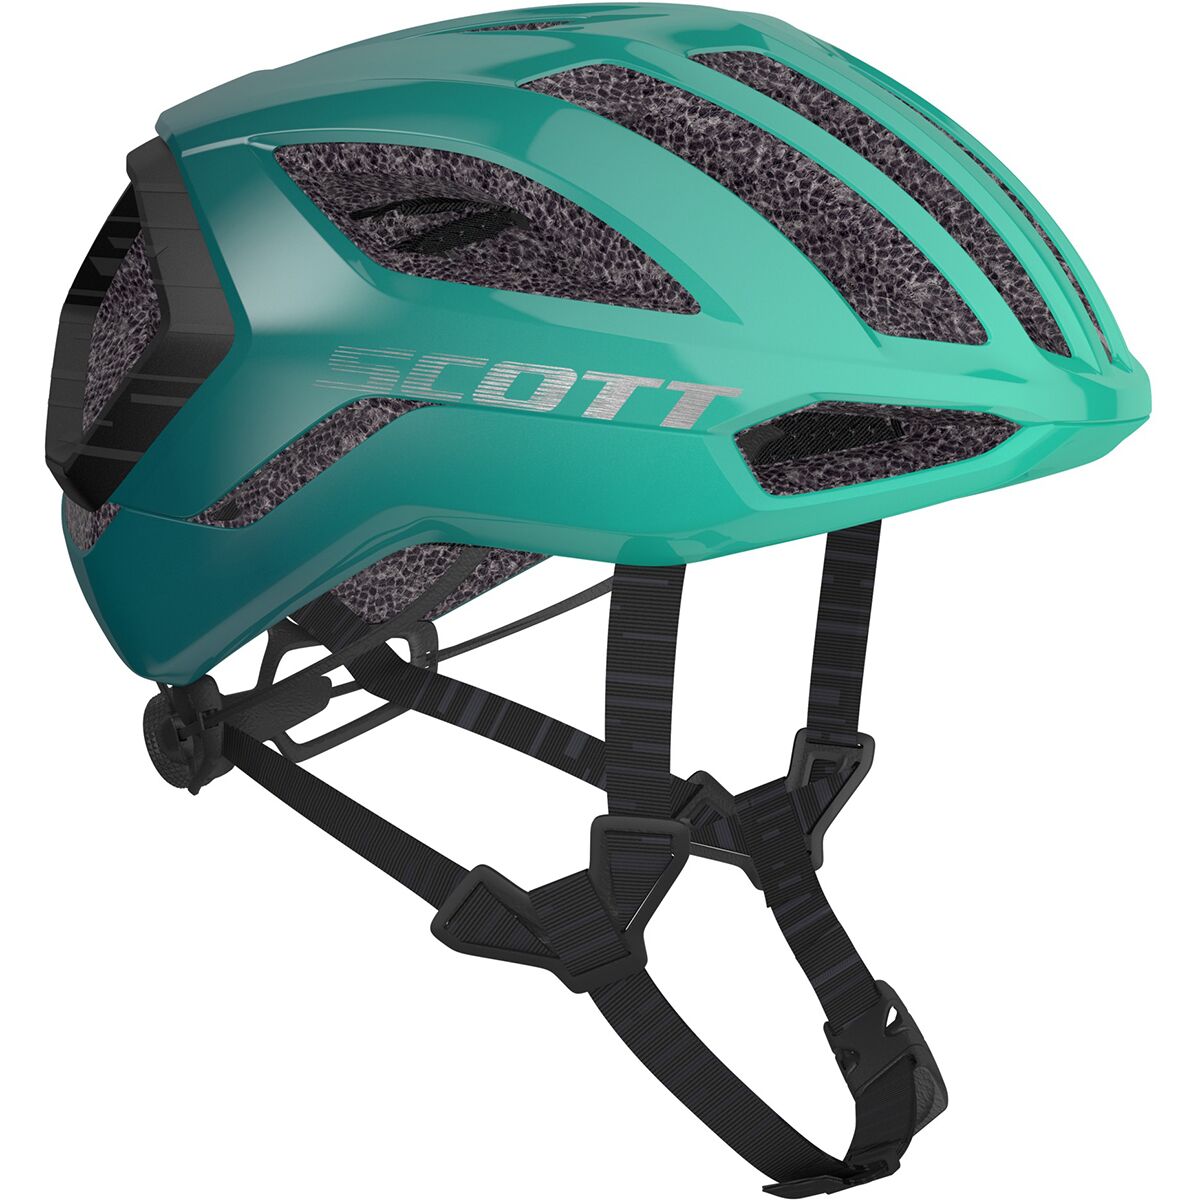 Scott Centric Plus Supersonic EDT Helmet